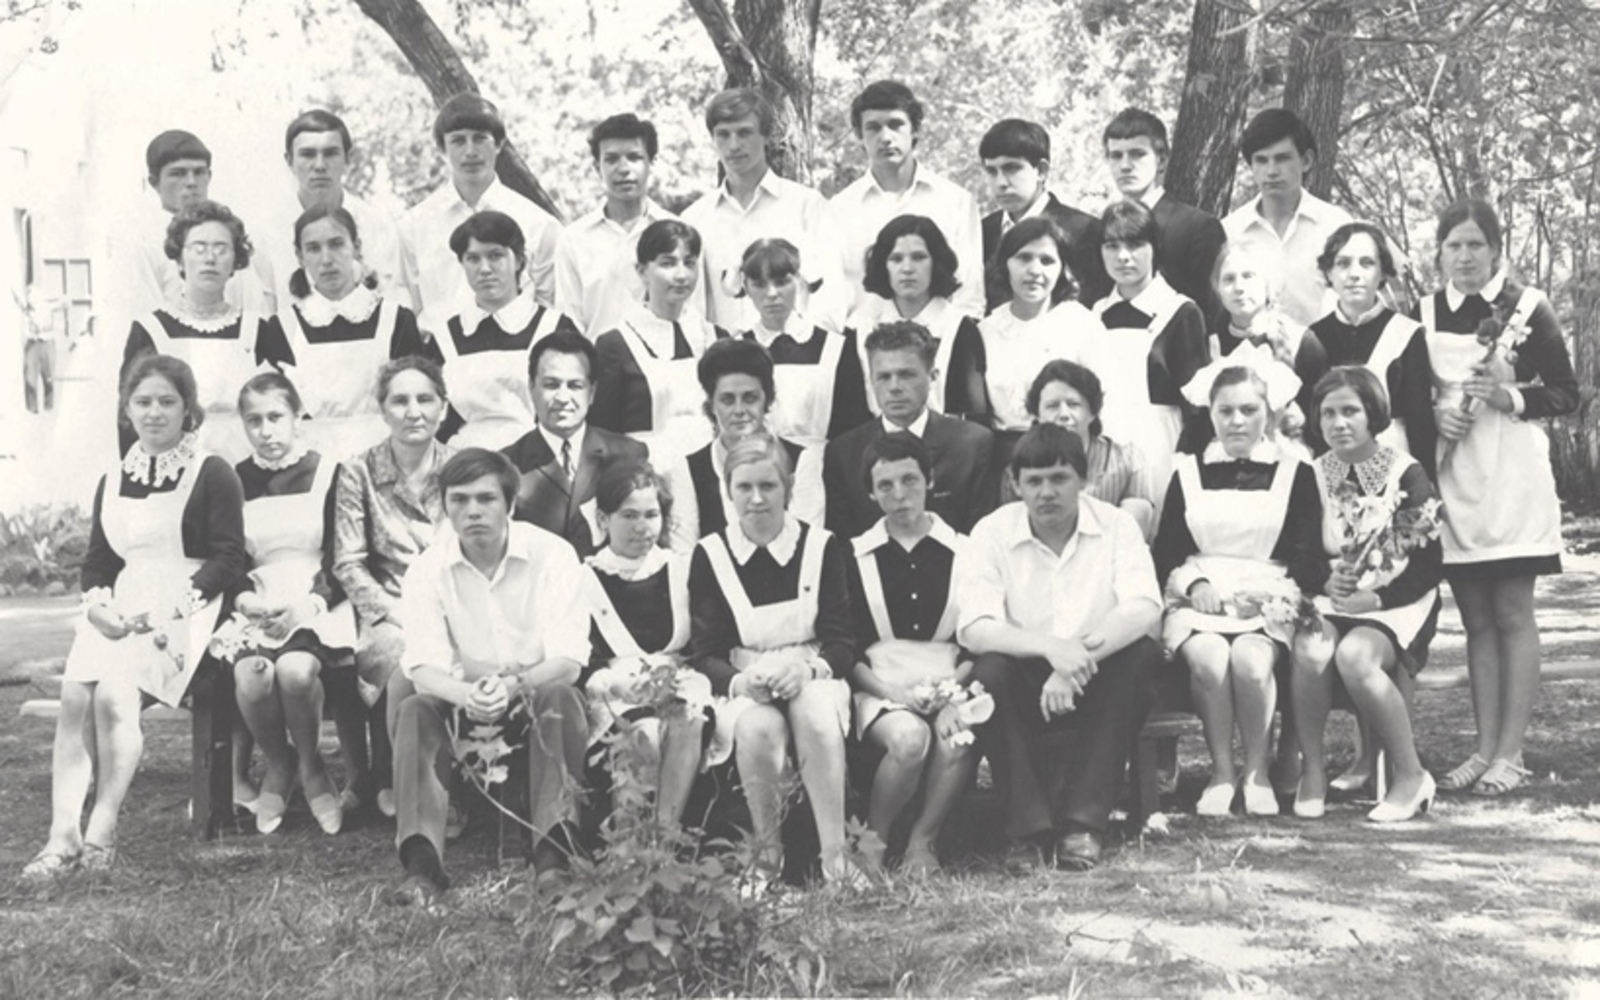 Выпуск 1965/66 учебного года школы- интерната № 1. Фотография сделана во дворе школы. Уфа, 1966 г.